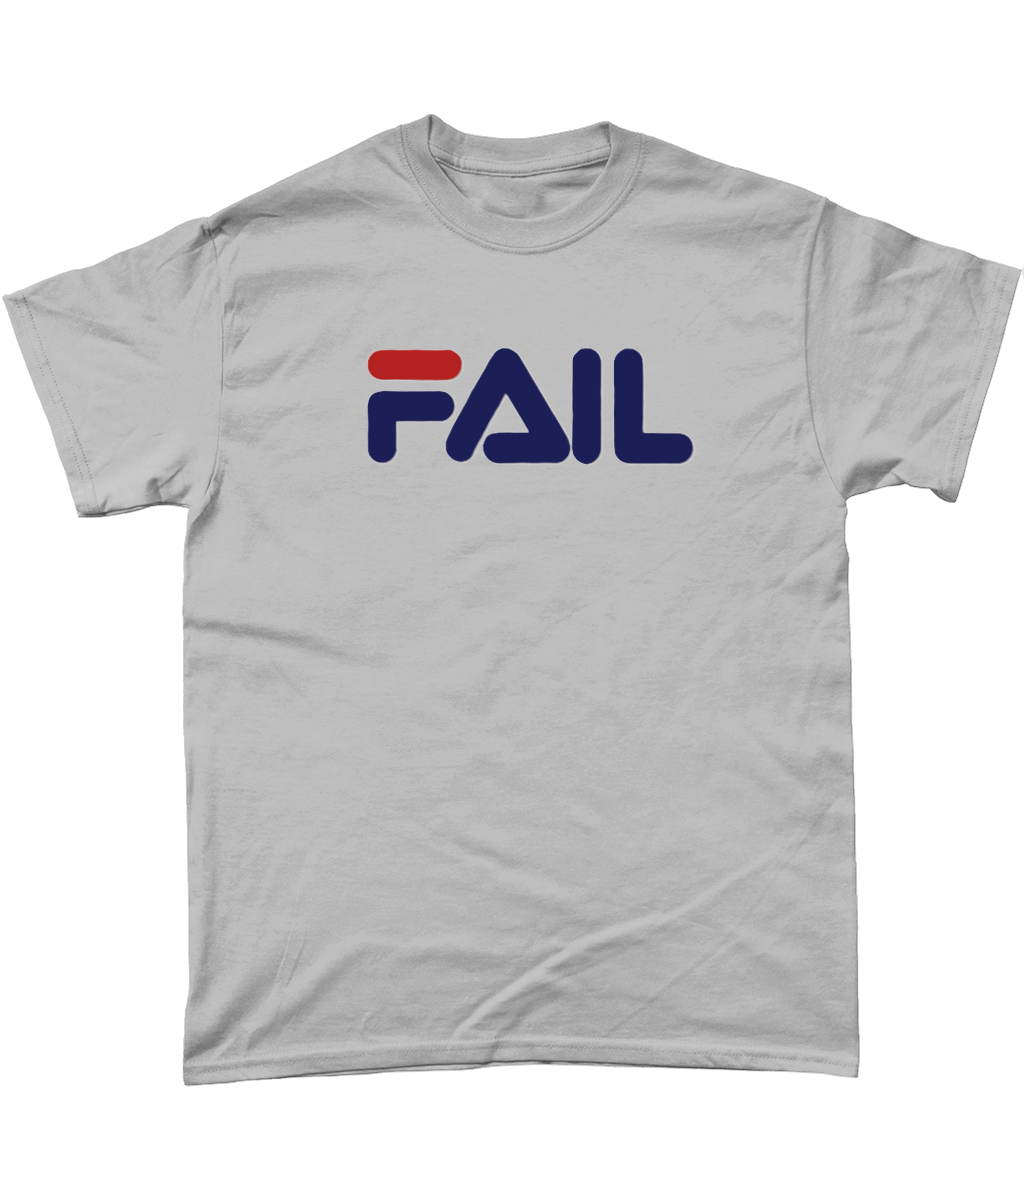 Fail: T-Shirt